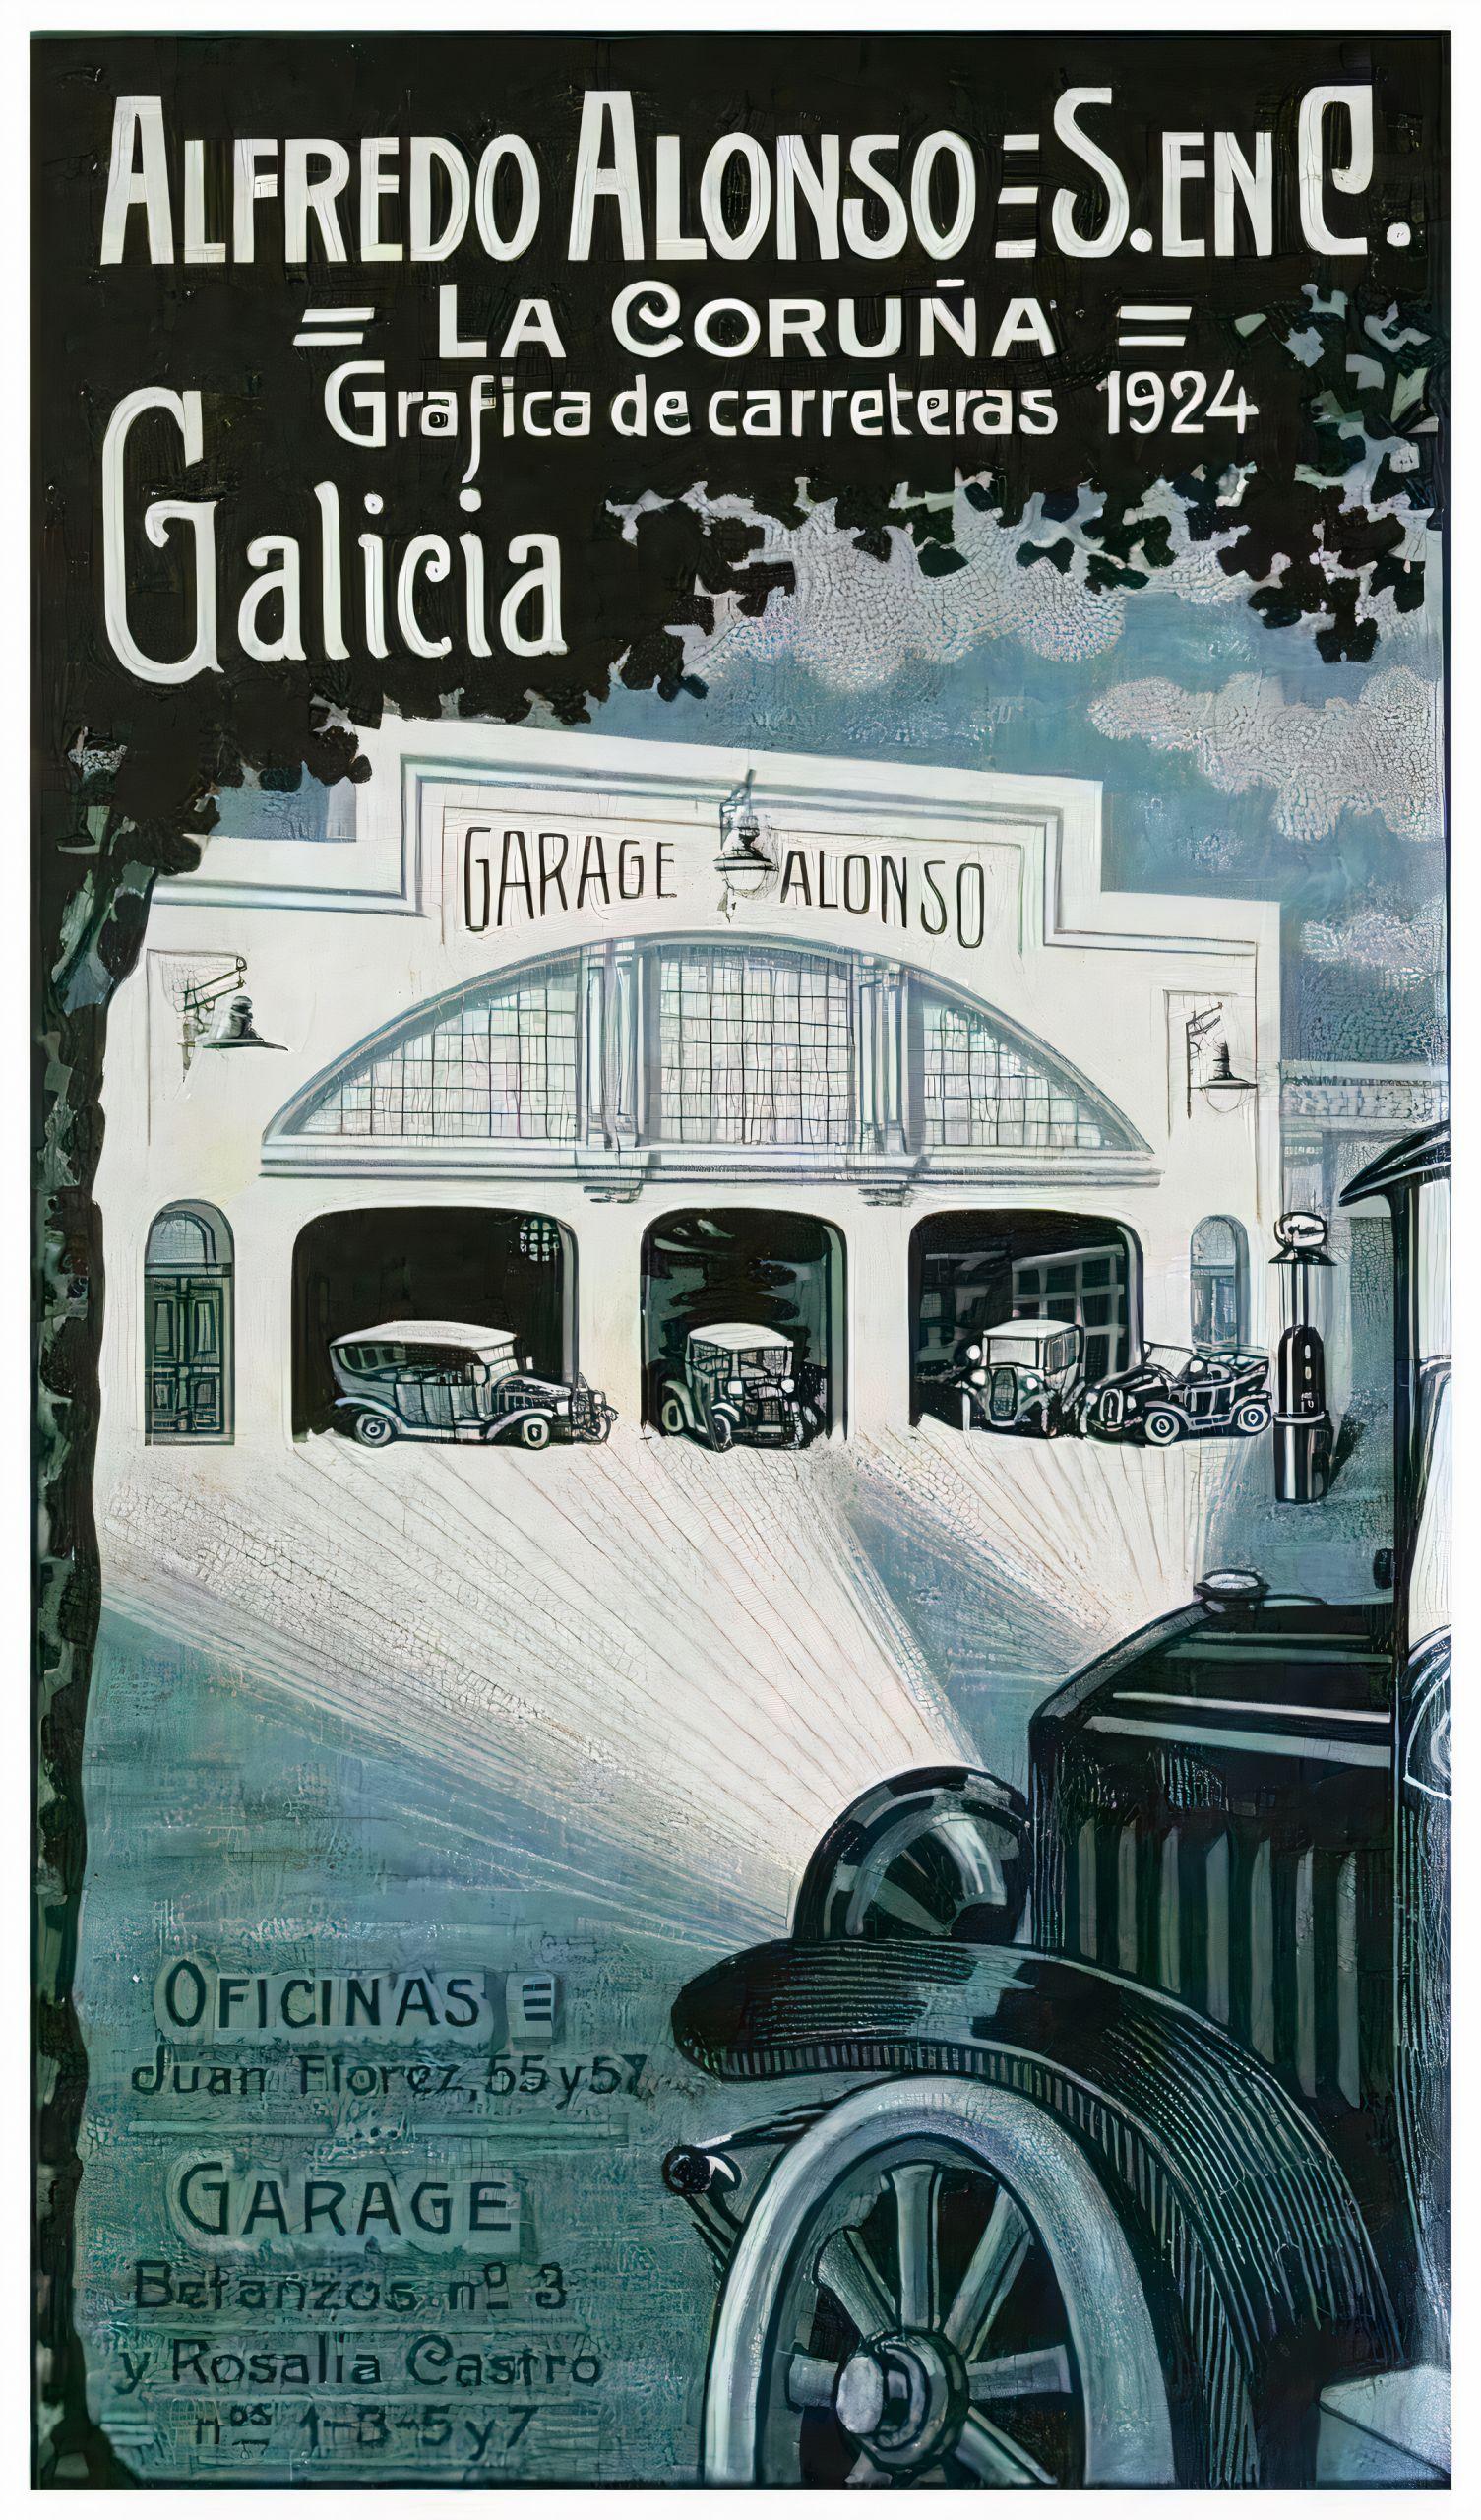 Garaje Alonso, vía Todocolección